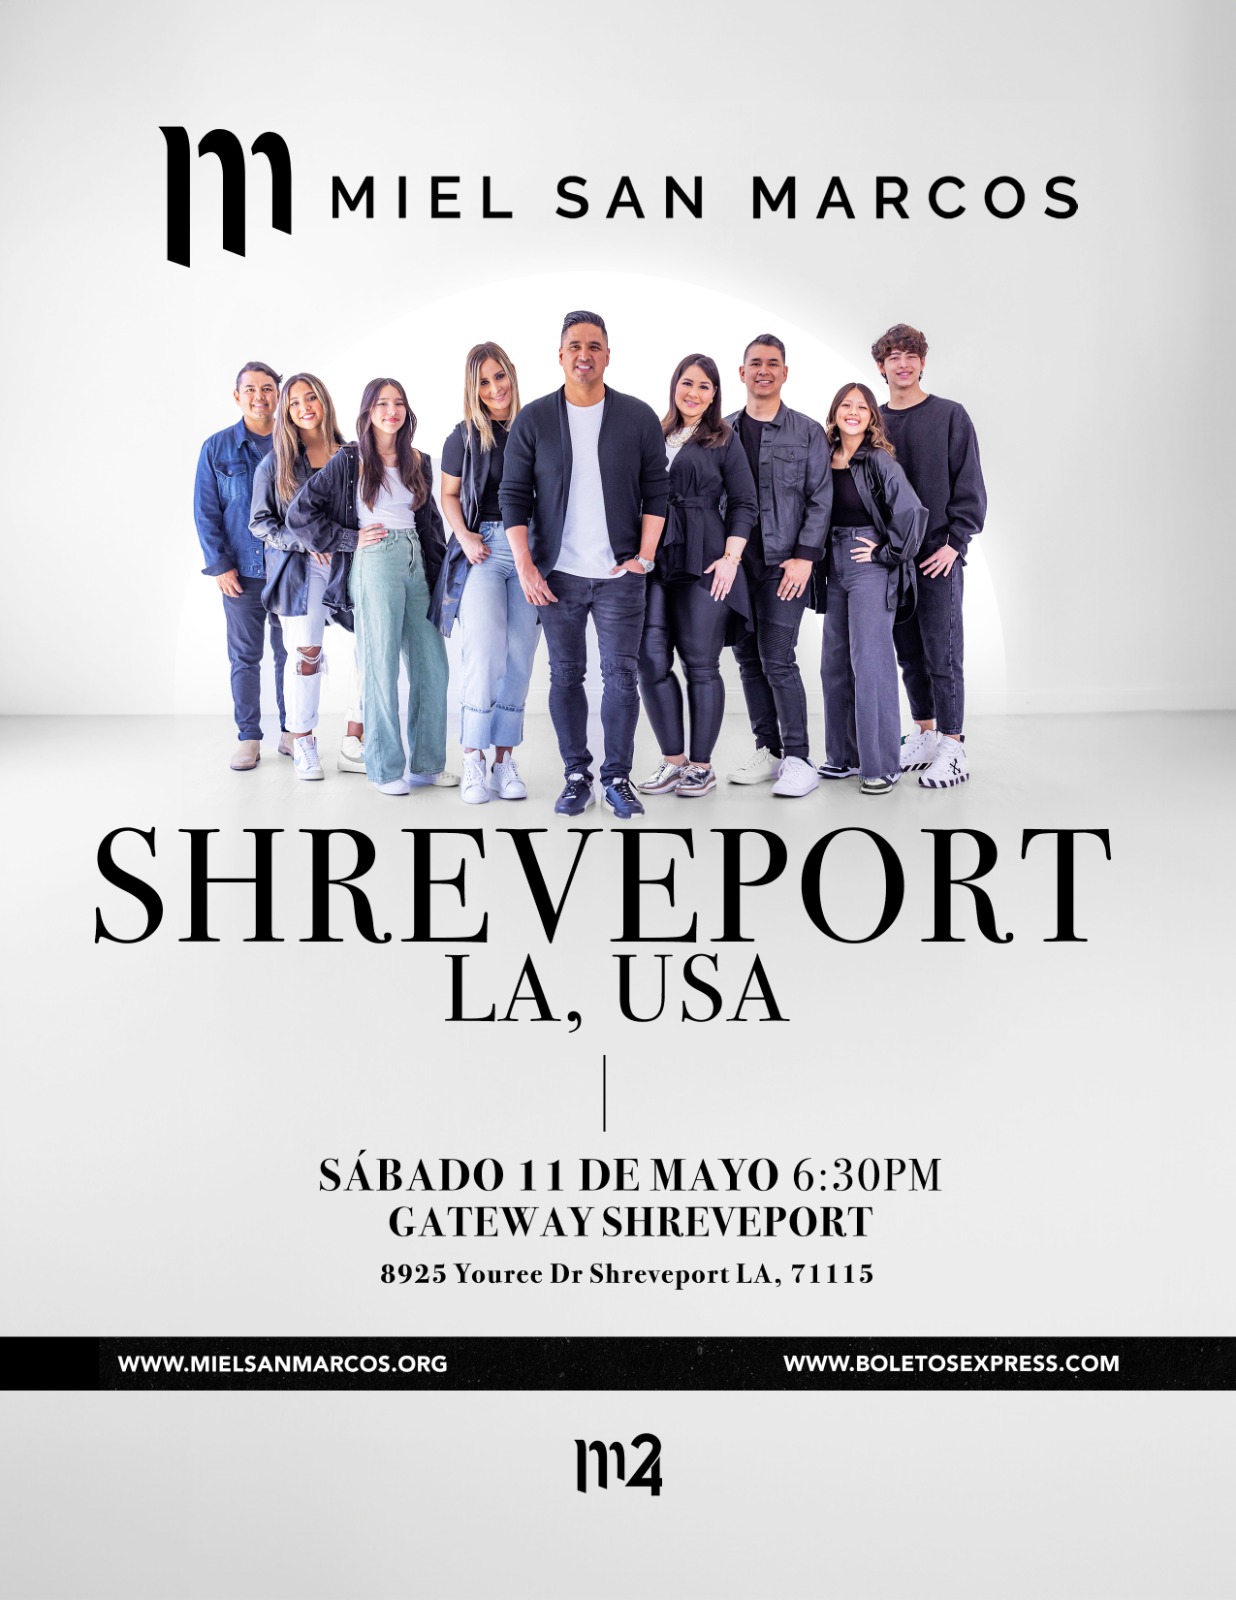 MIEL SAN MARCOS | SHREVEPORT LA